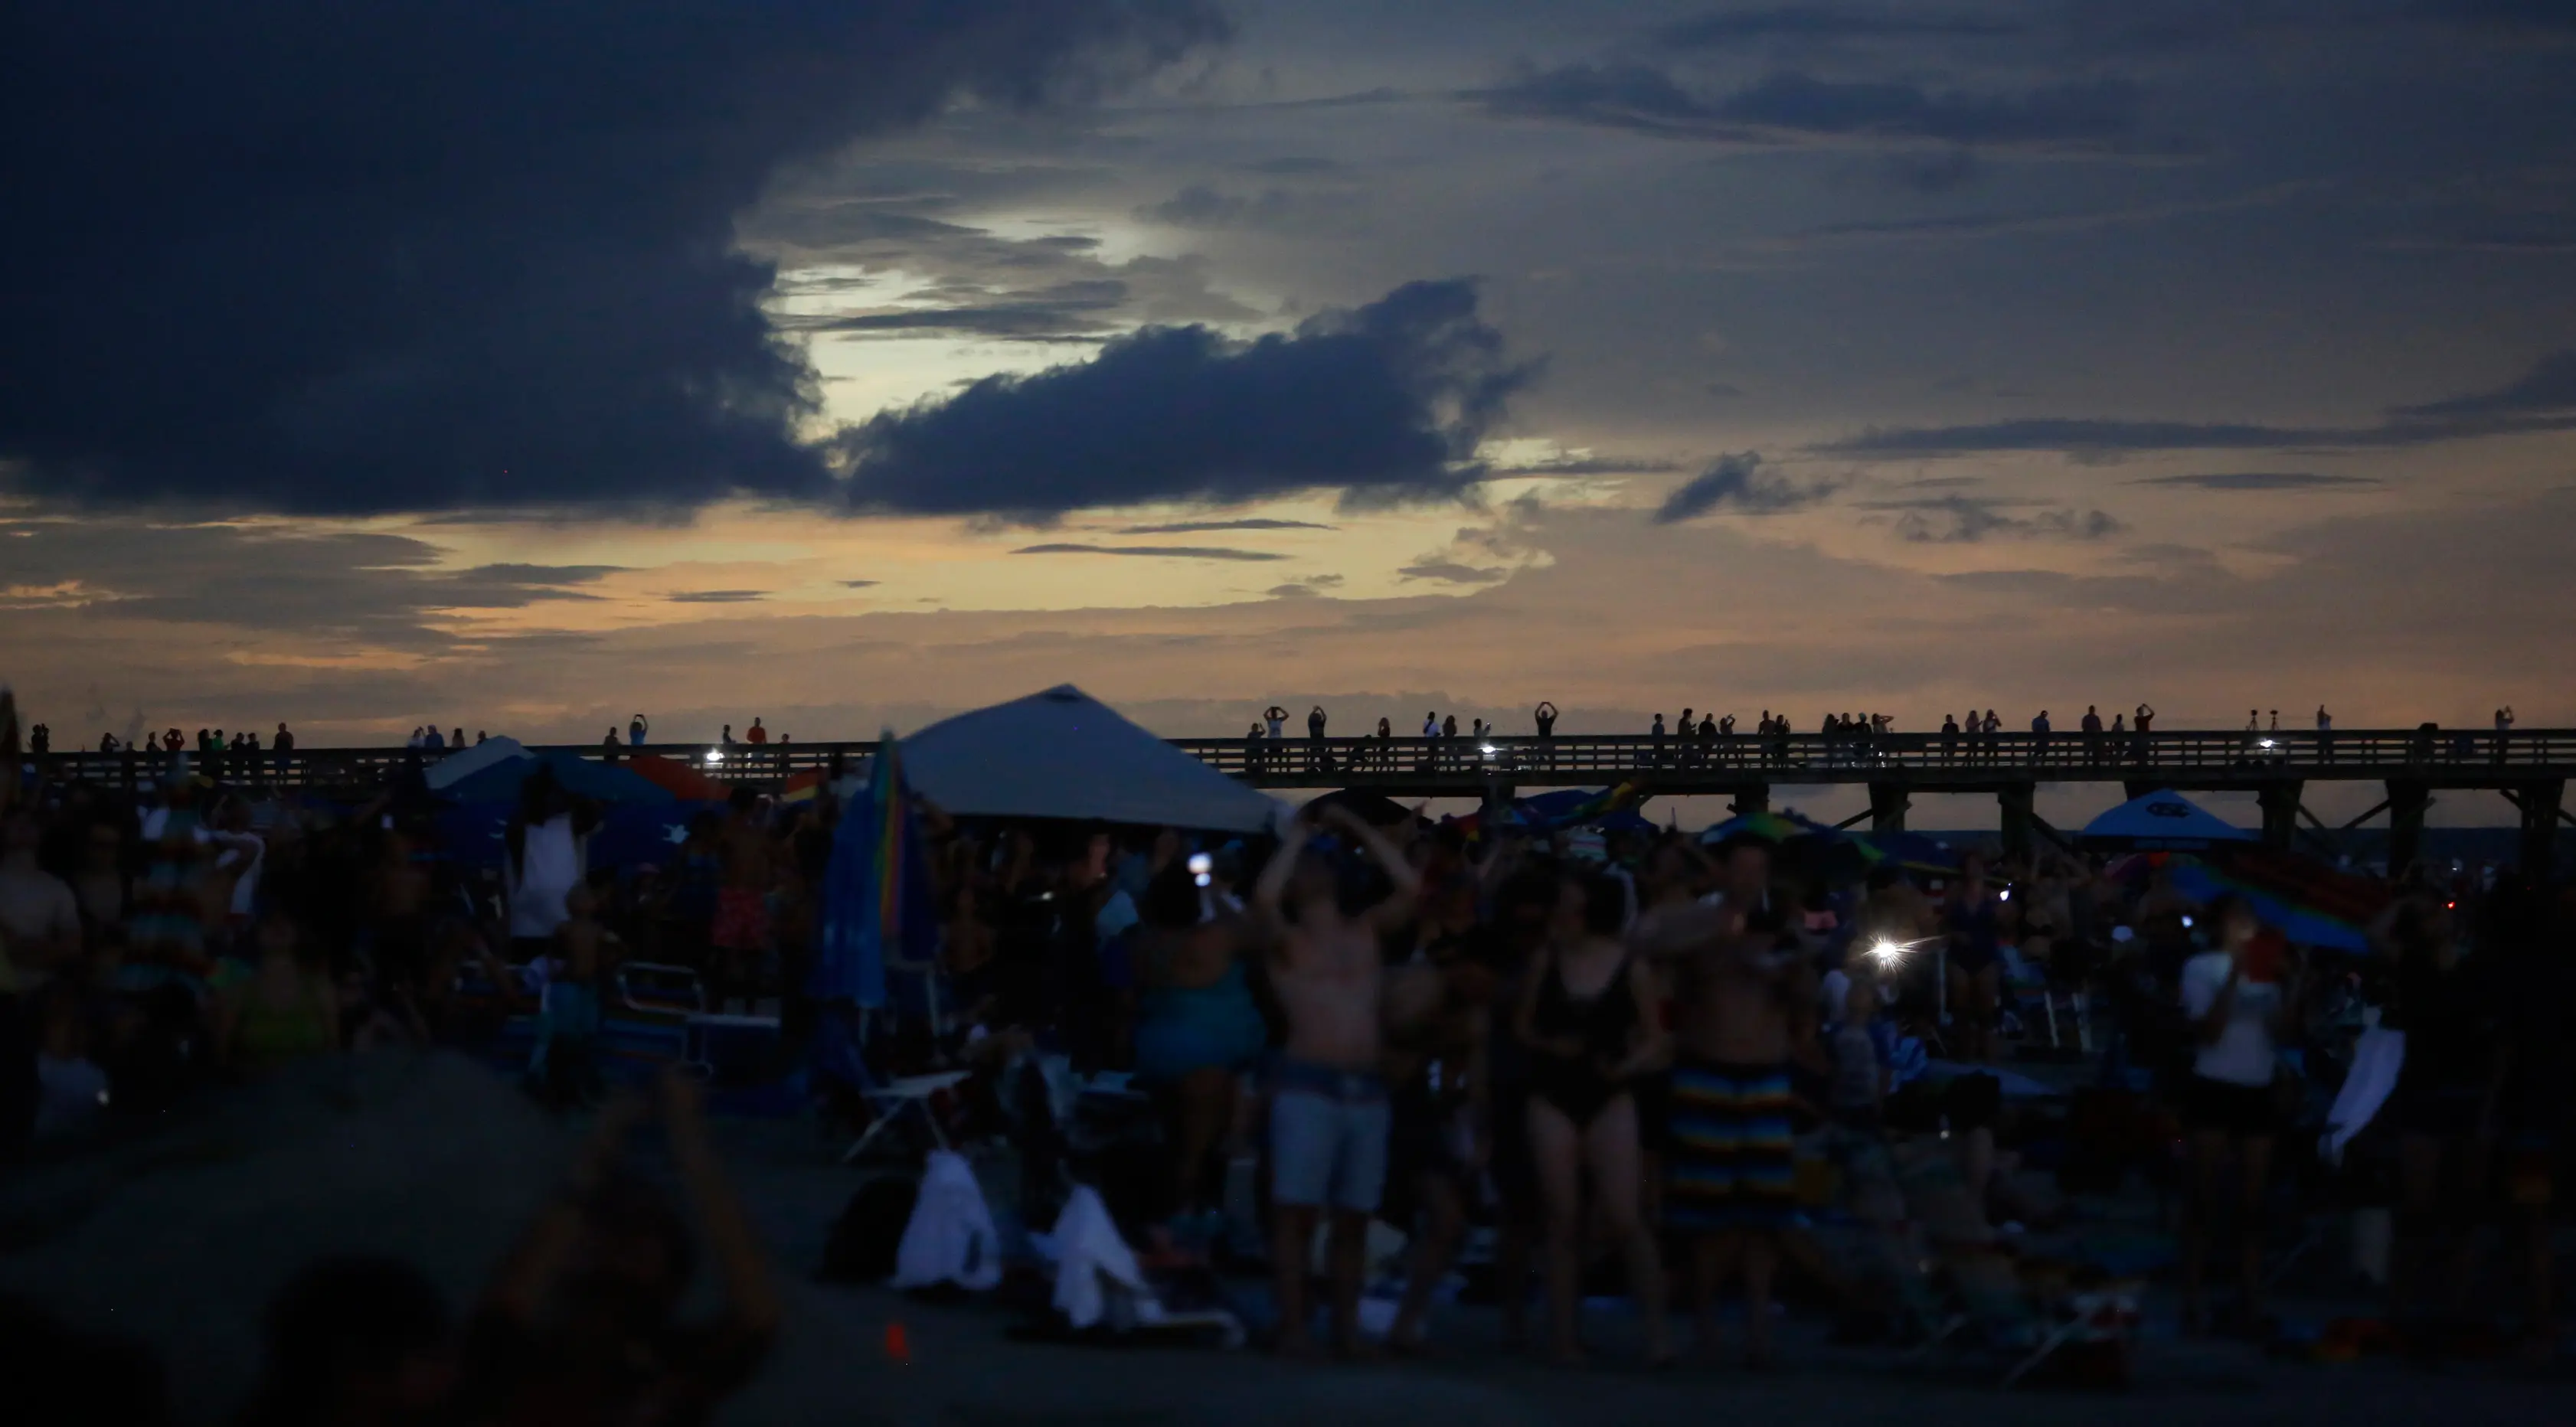 Langit di pantai Isle of Palms, South Carolina berubah menjadi gelap selama fenomena gerhana matahari, Senin (21/8). Gerhana matahari terjadi selama 100 menit dan selama dua menit kondisi langit akan gelap gulita di siang hari. (AP Photo/Mic Smith)